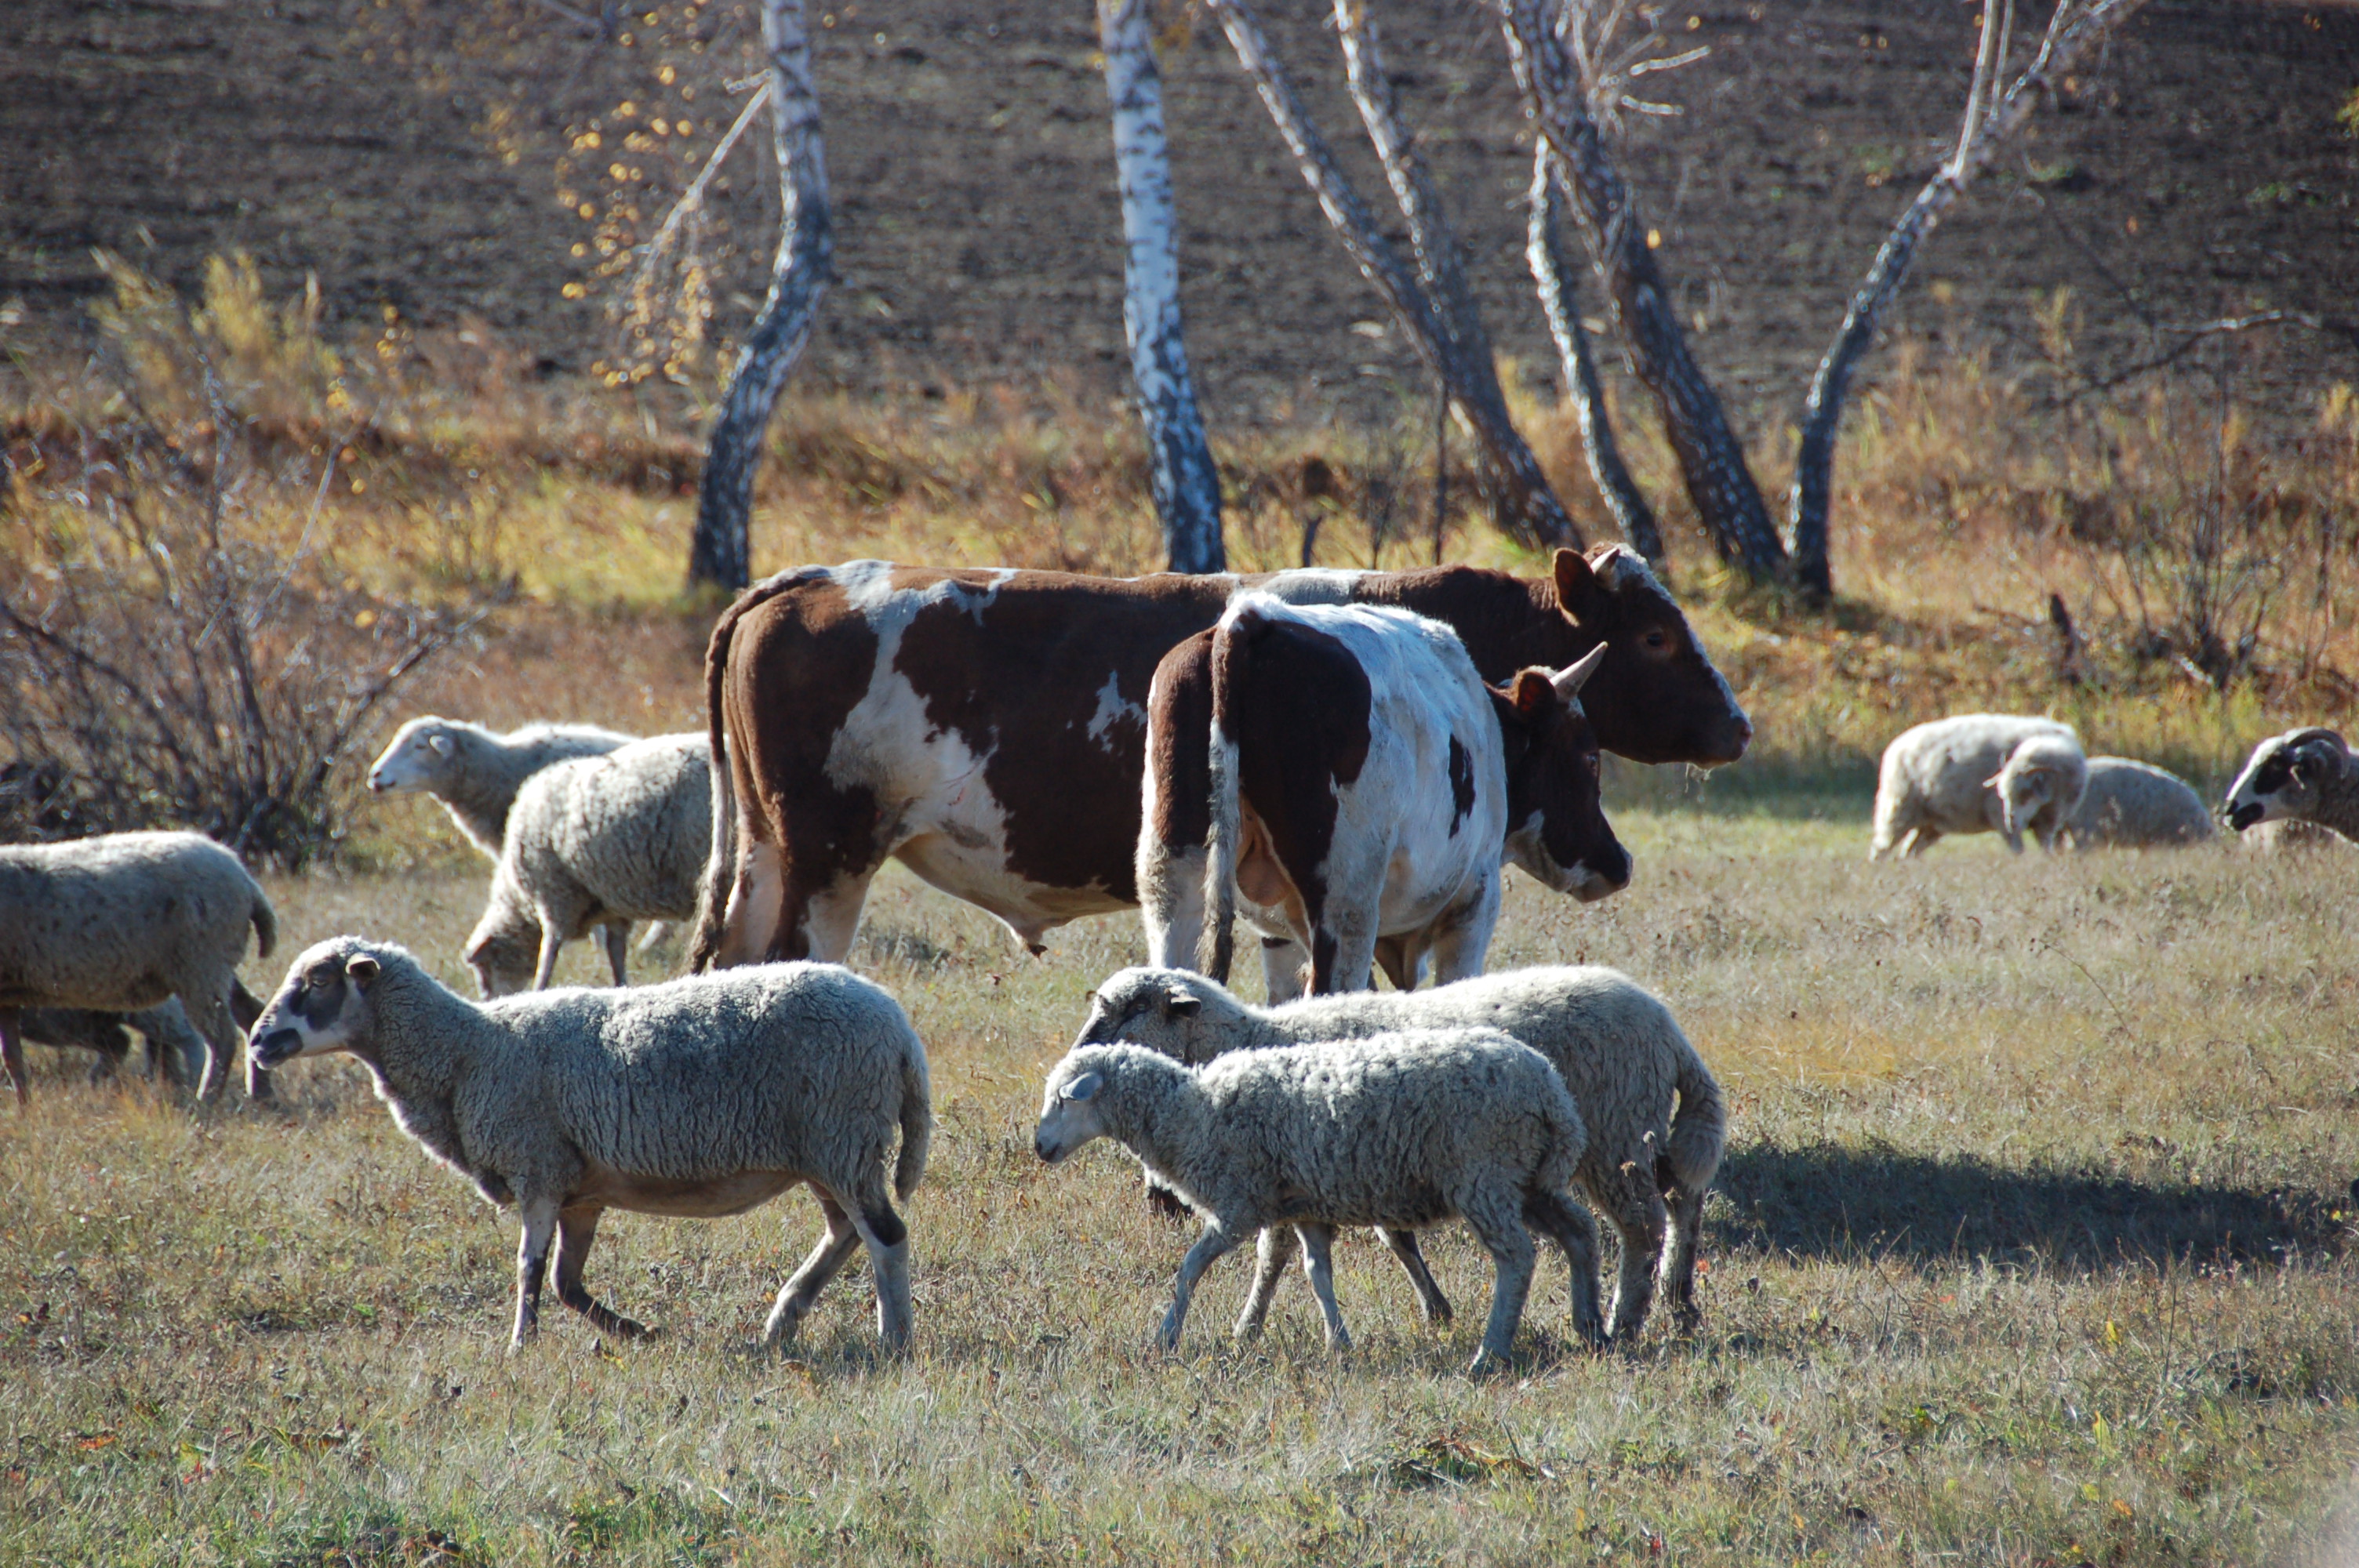 В Минсельхозпроде Дагестана обсудили вопросы племенного животноводства